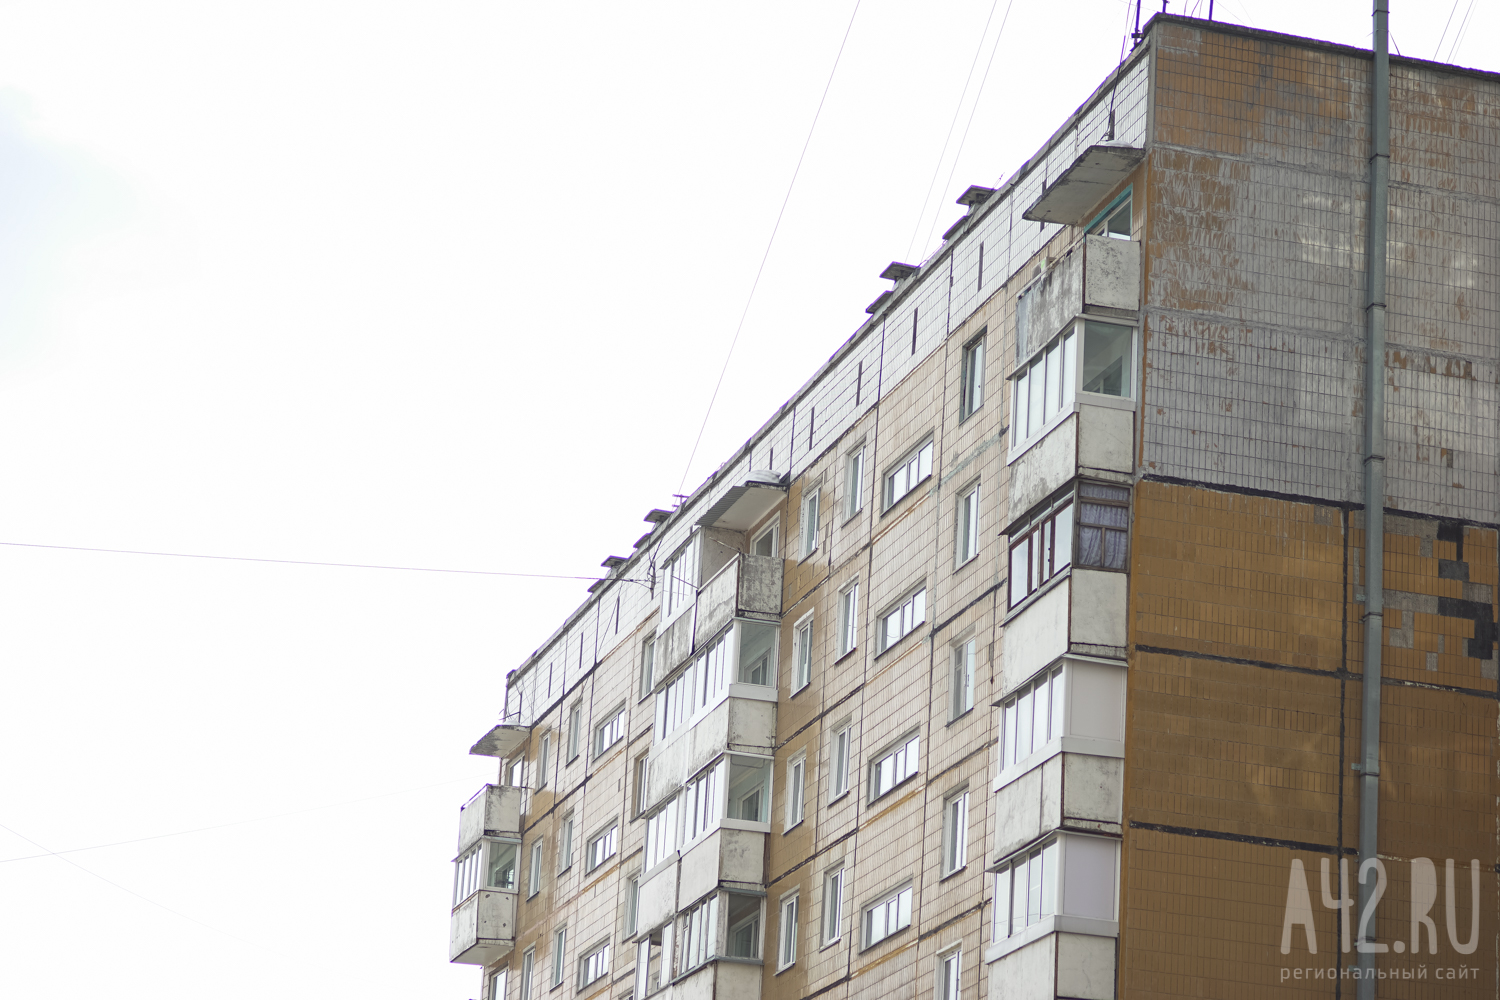 В Москве 2-летний ребёнок выпал с балкона на 10 этаже, пока его мать развешивала бельё 